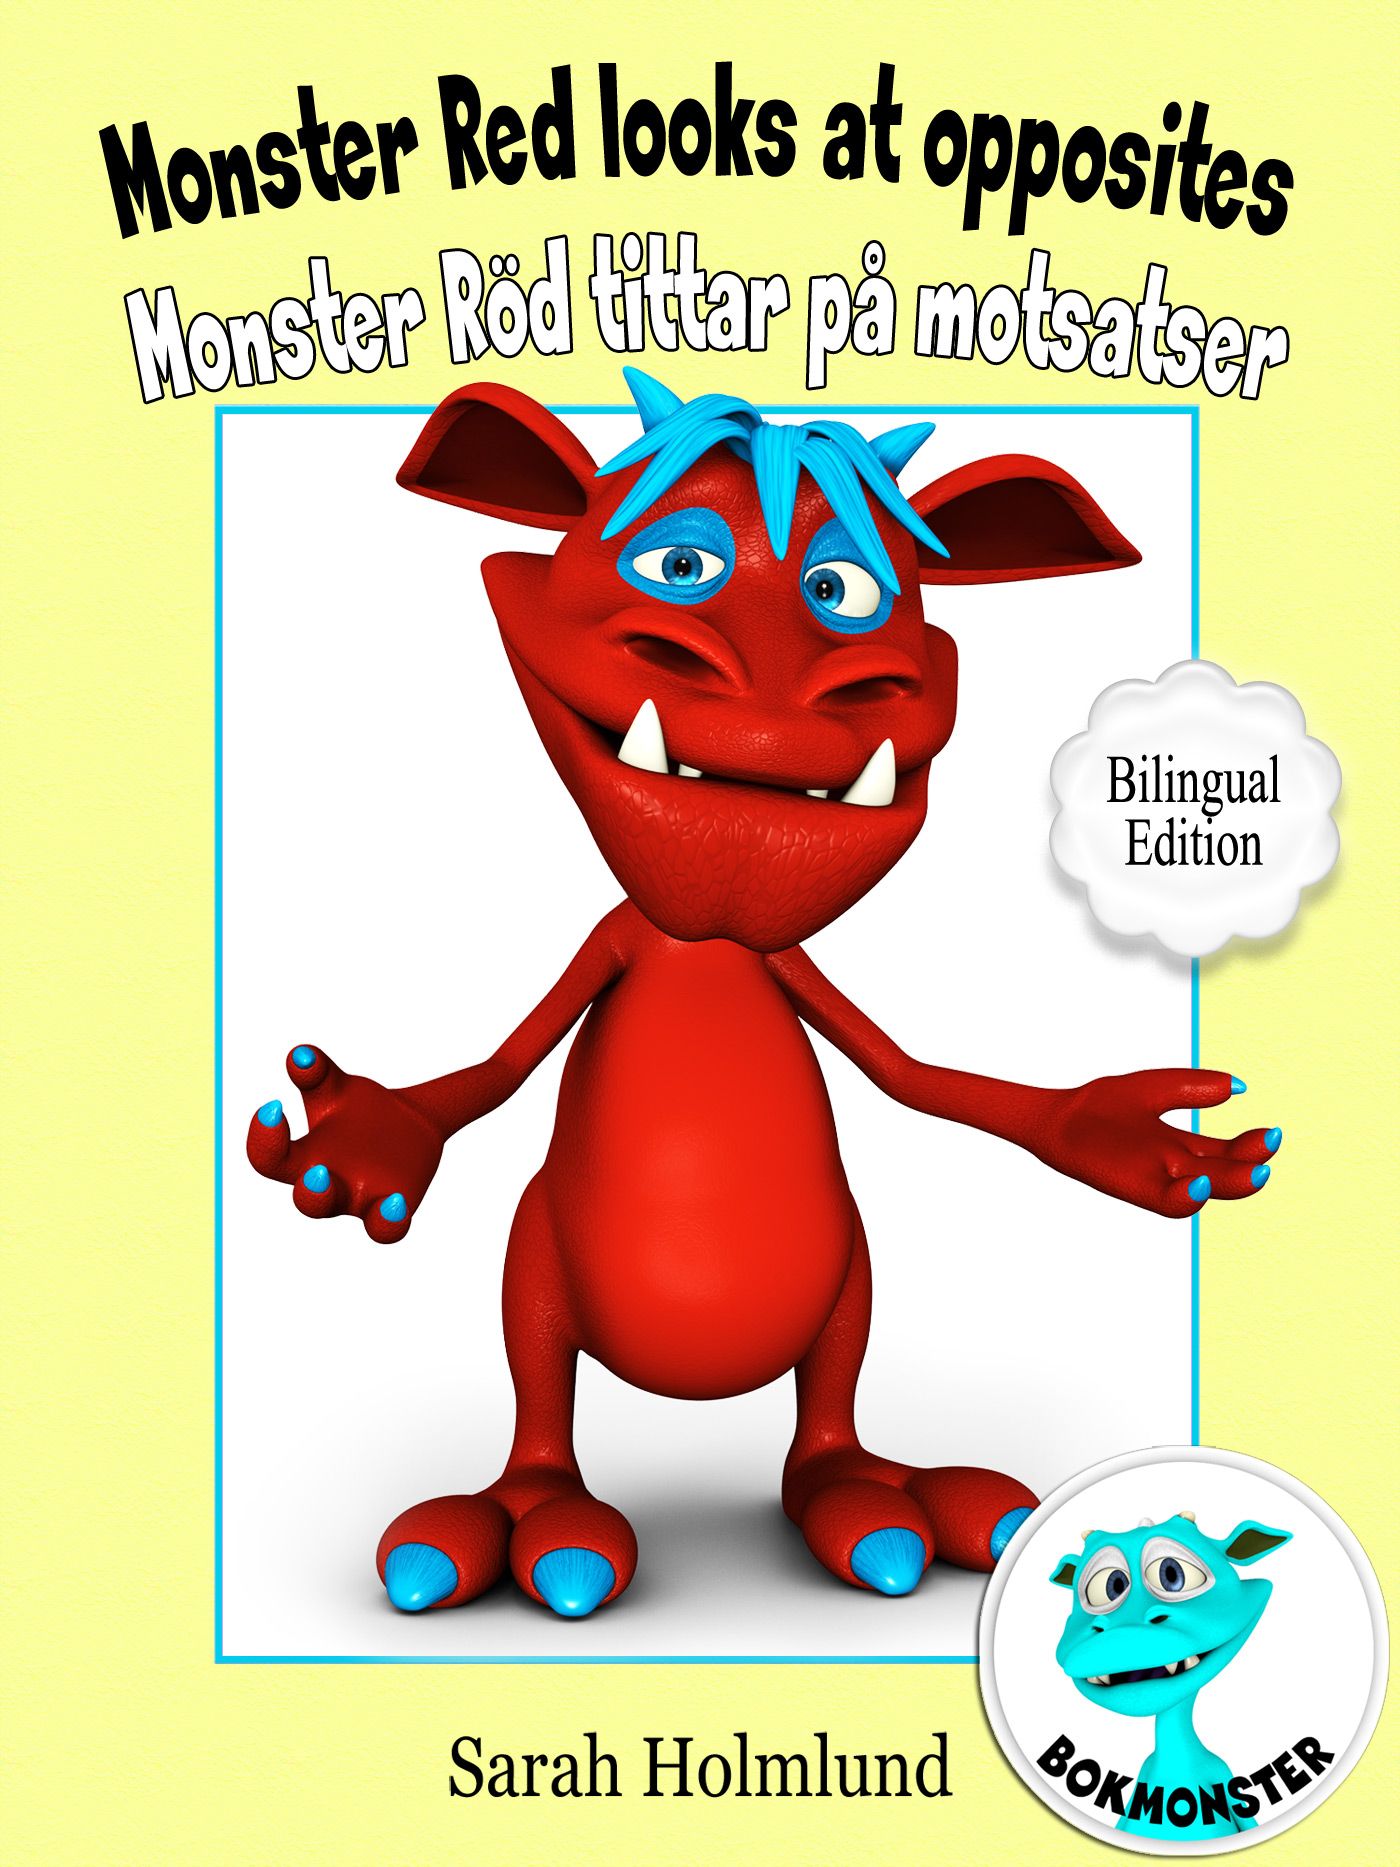 Monster Red looks at opposites - Monster Röd tittar på motsatser - Bilingual Edition, eBook by Sarah Holmlund